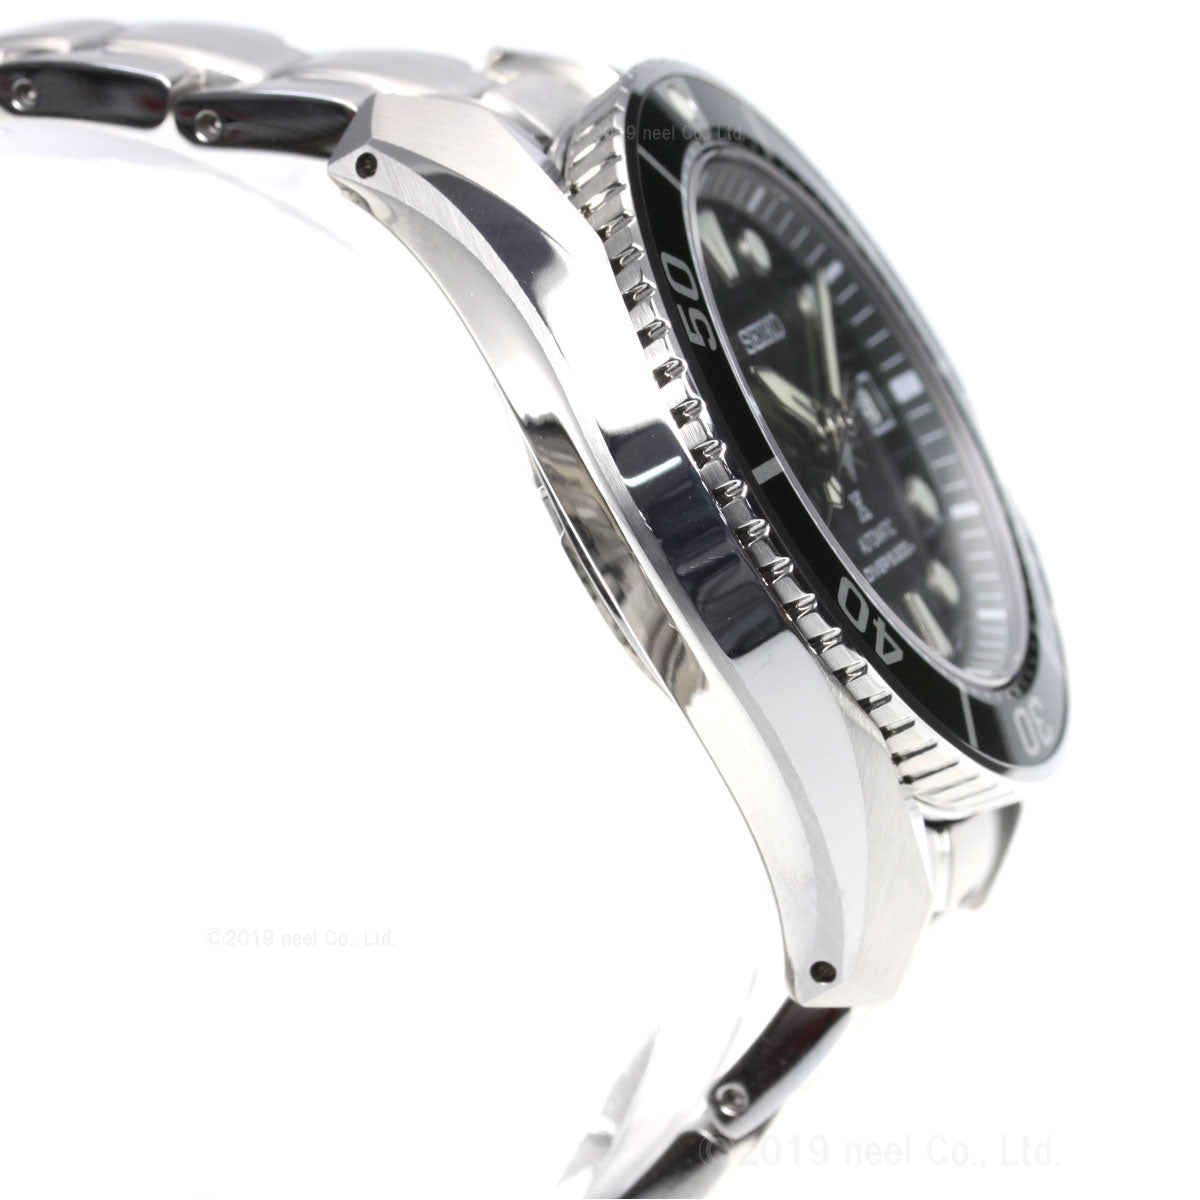 セイコー プロスペックス SEIKO PROSPEX ダイバースキューバ メカニカル 自動巻き コアショップ専用 腕時計 メンズ スモウ SUMO SBDC081